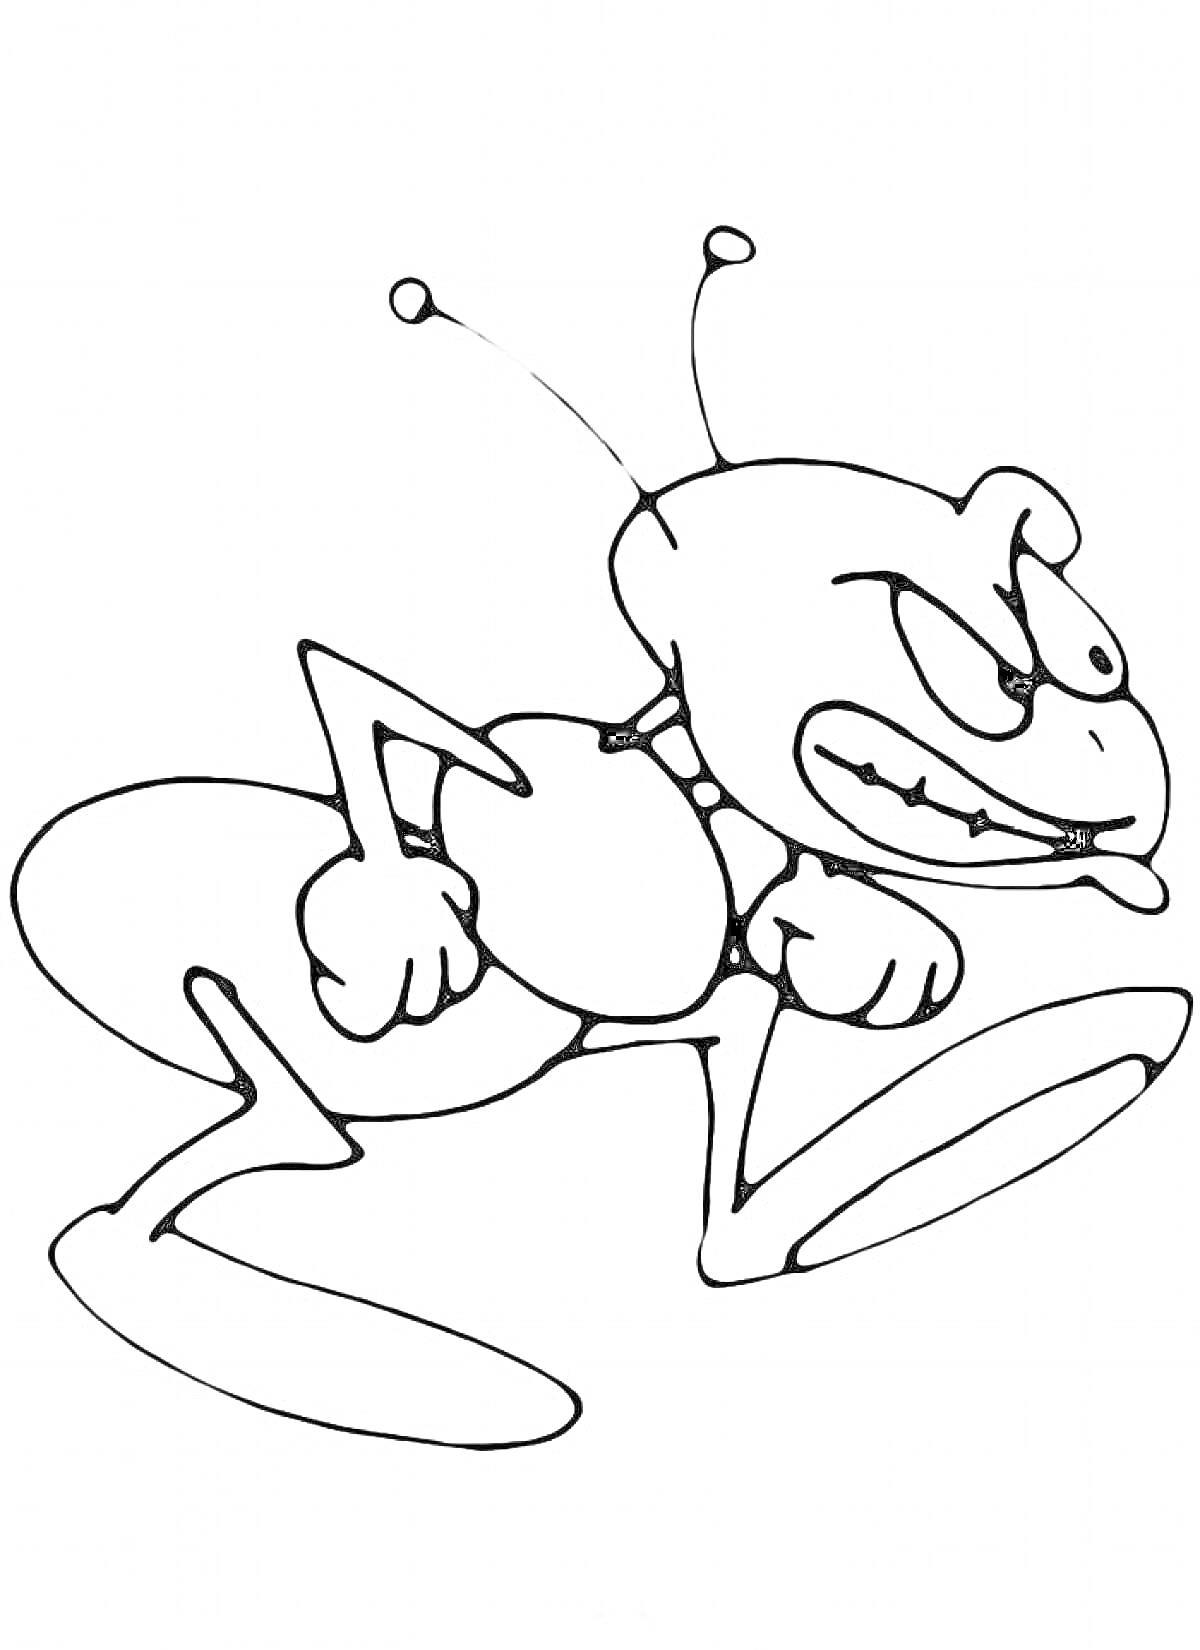 Антропоморфный муравей с нахмуренным выражением лица и поднятыми кулаками